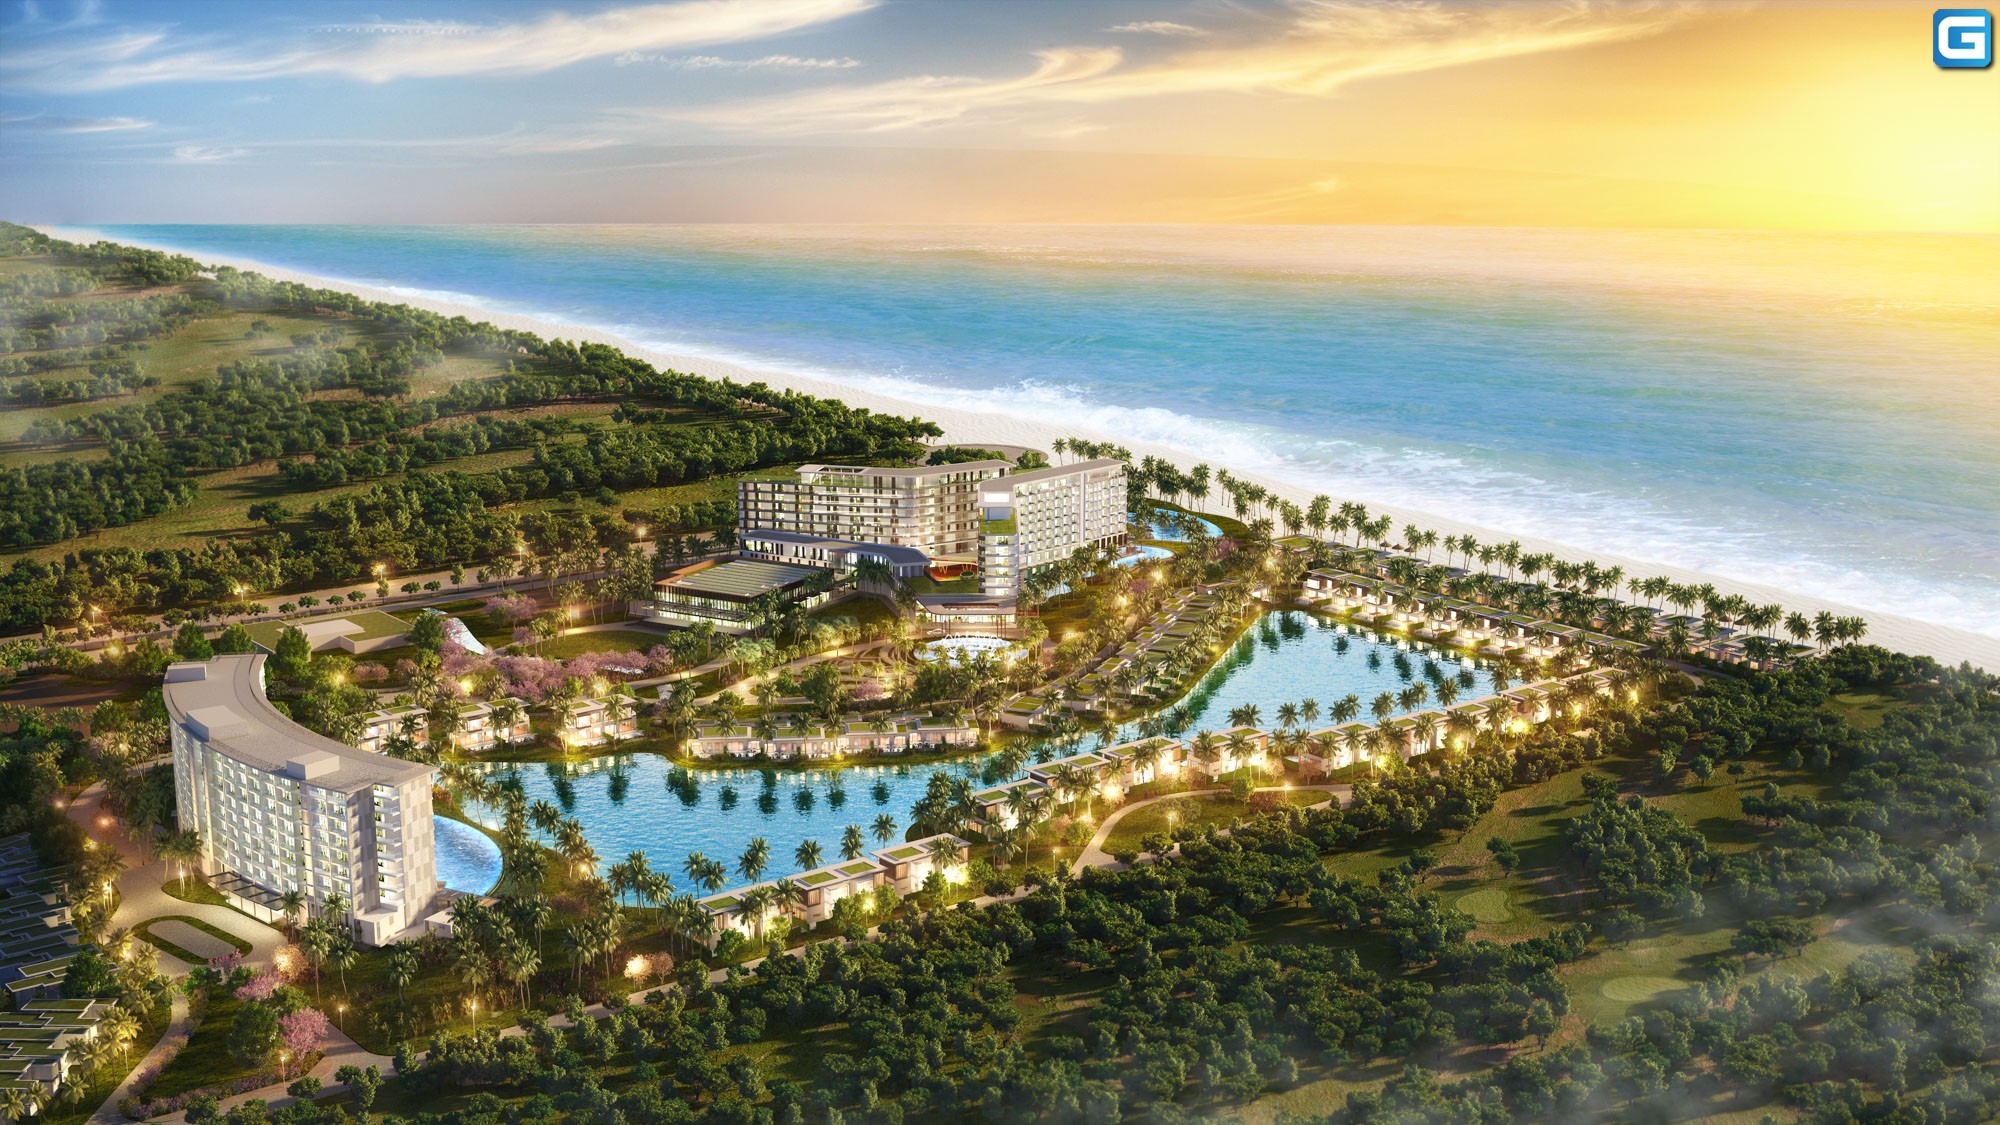 dự án Movenpick Resort Waverly Phú Quốc